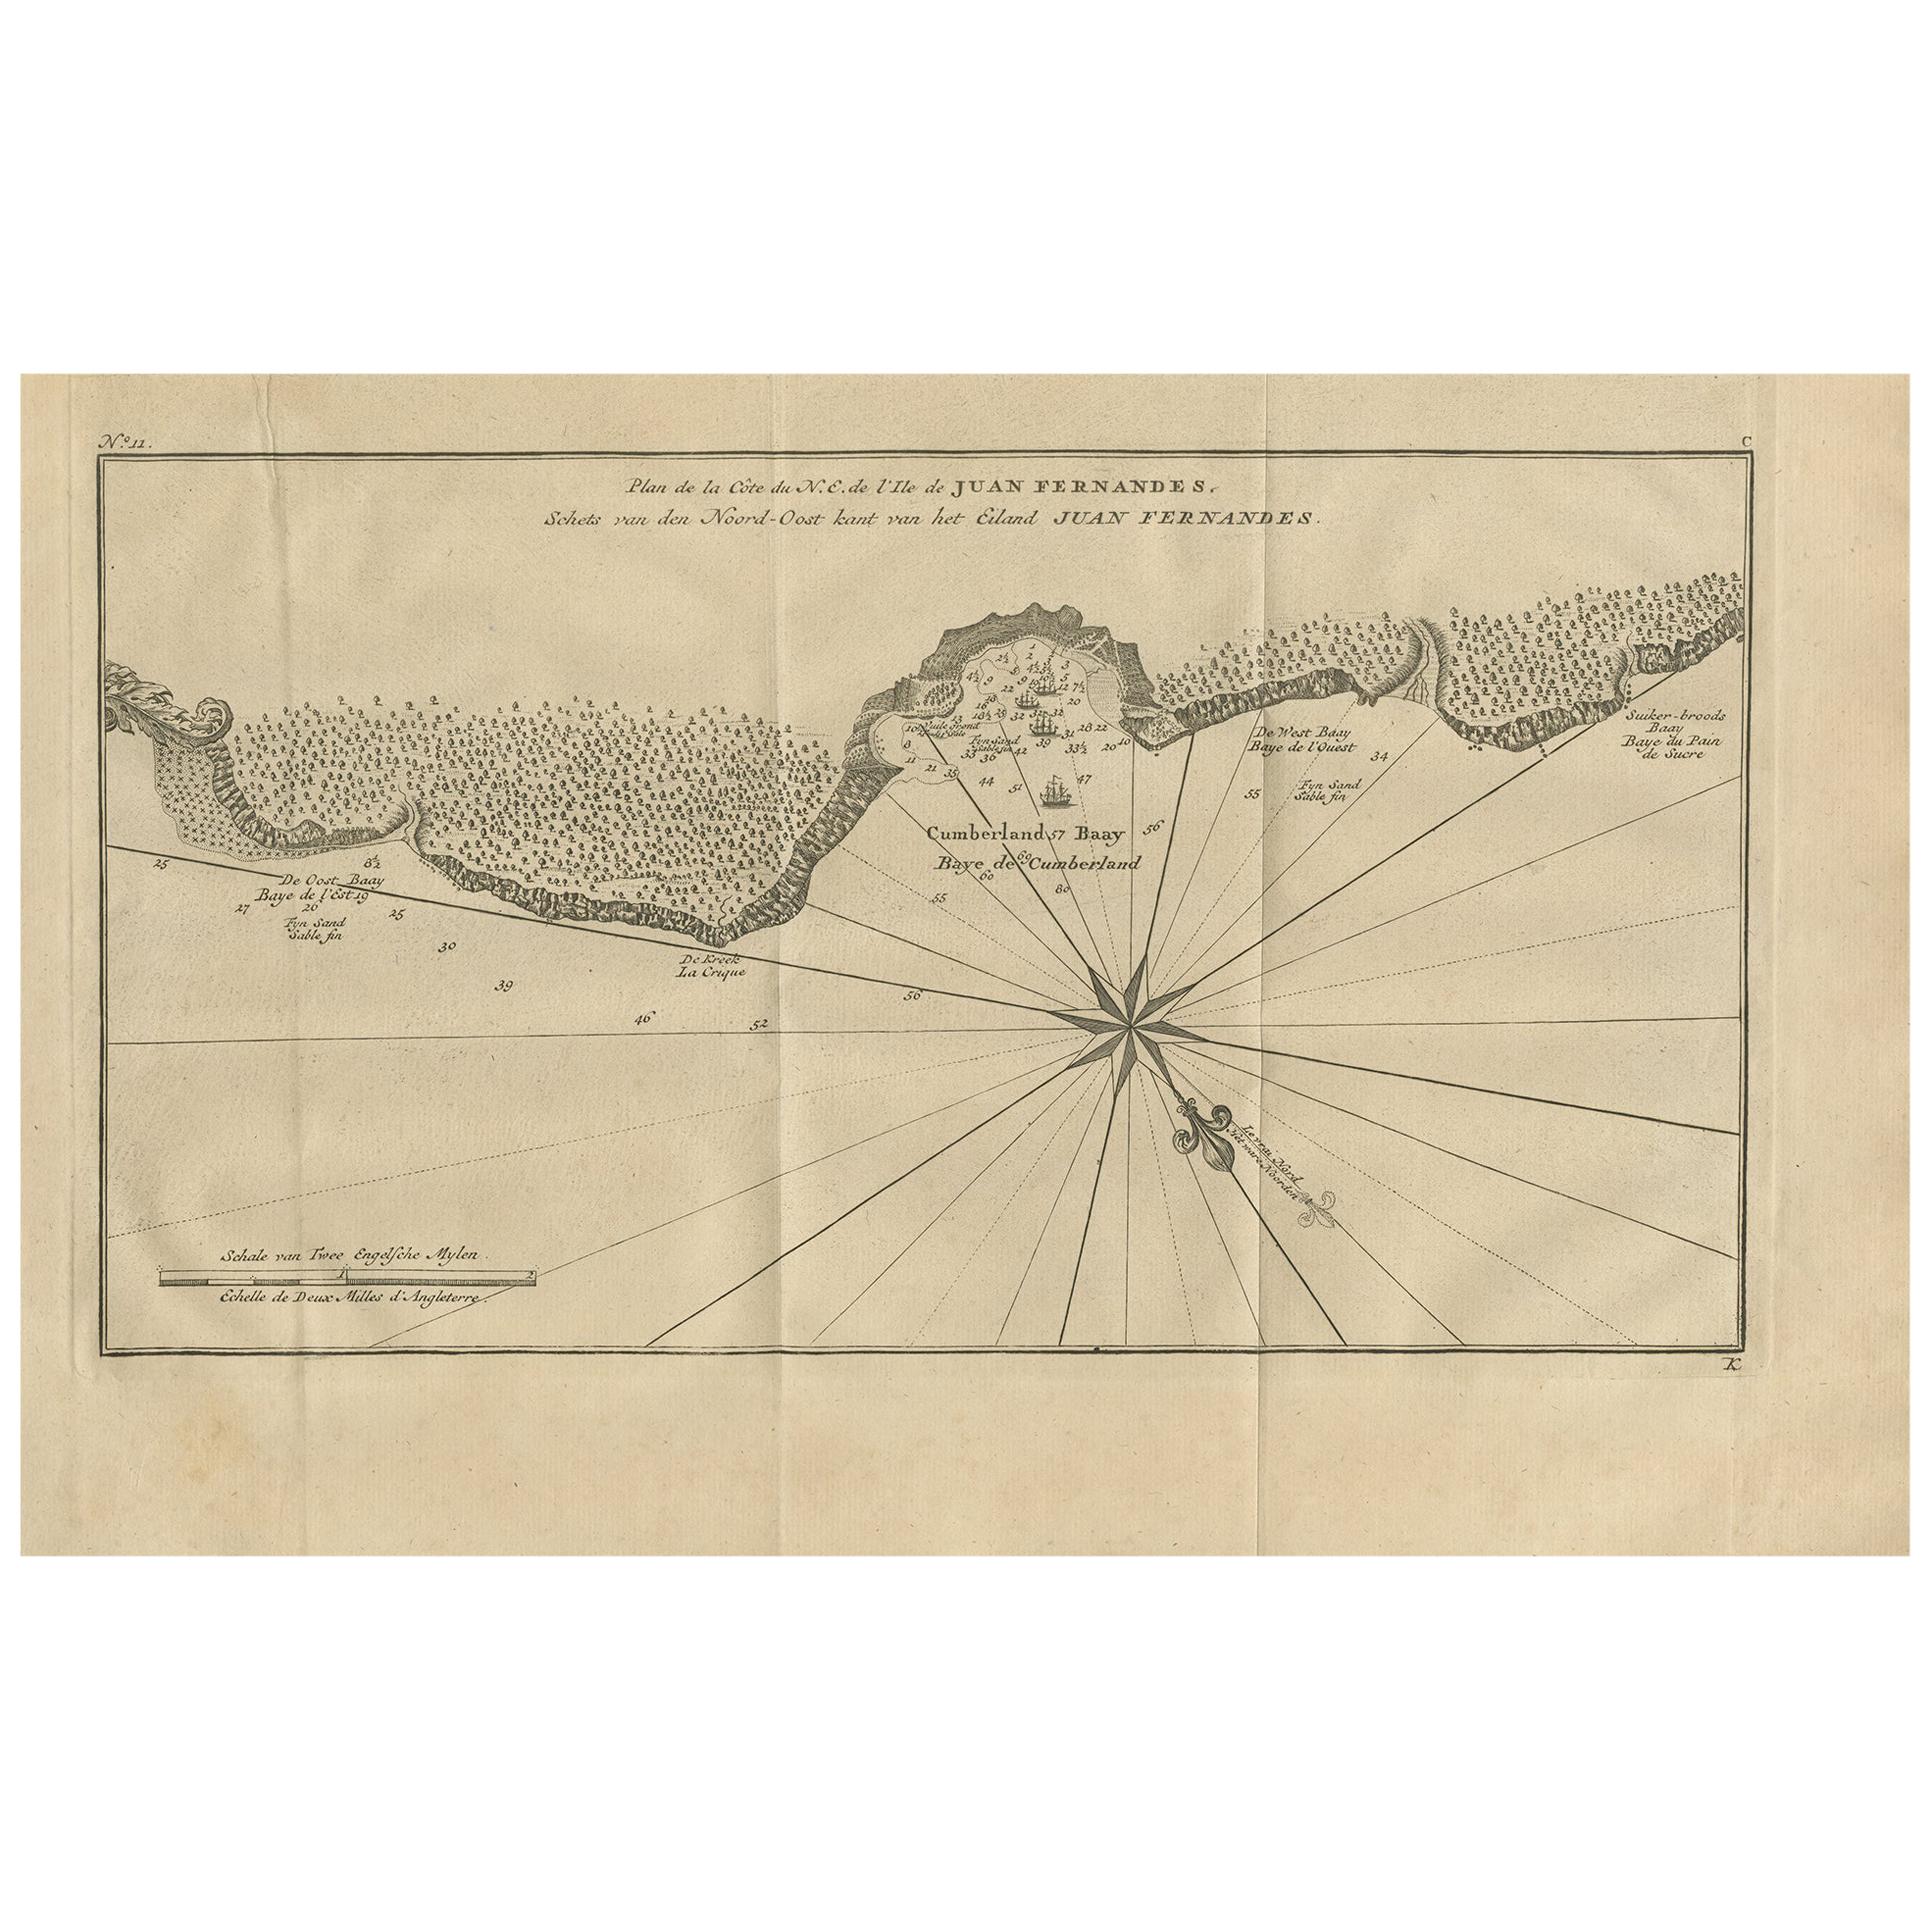 Carte ancienne de l'île de Juan Fernandez et de la baie de Cumberland, Chili, vers 1749